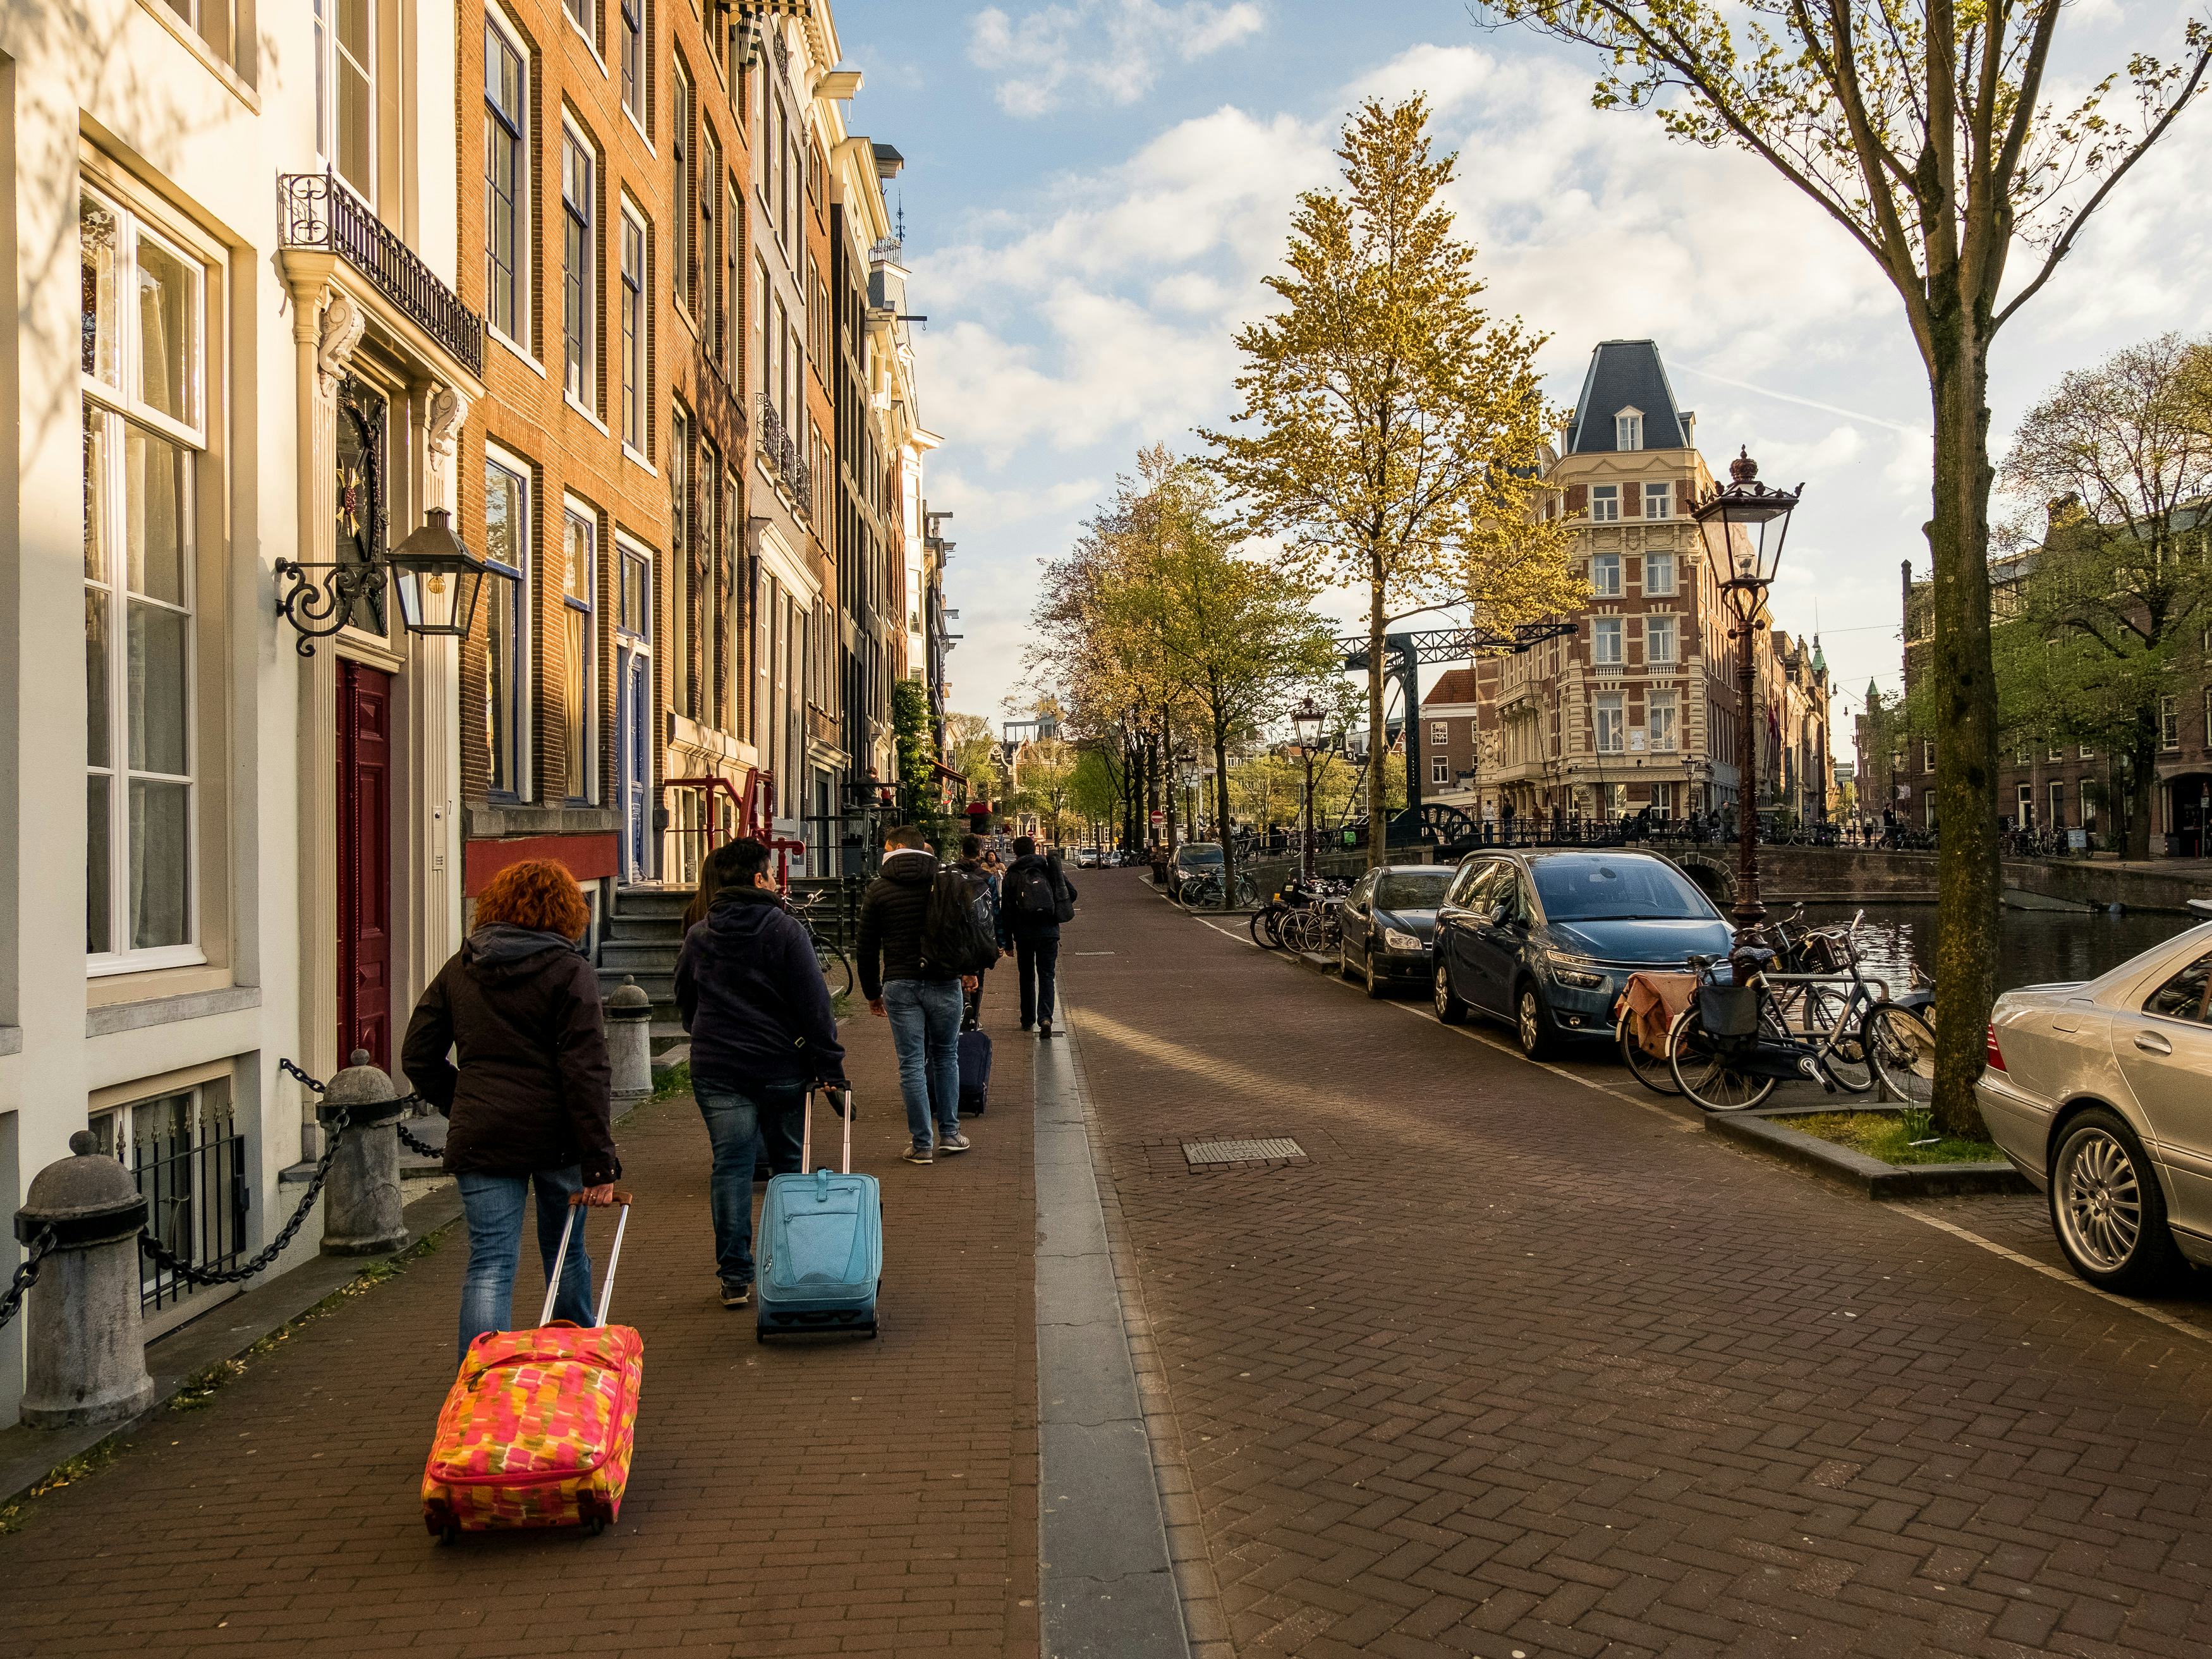 Vakantieverhuur in delen Amsterdam per 1 juli verboden